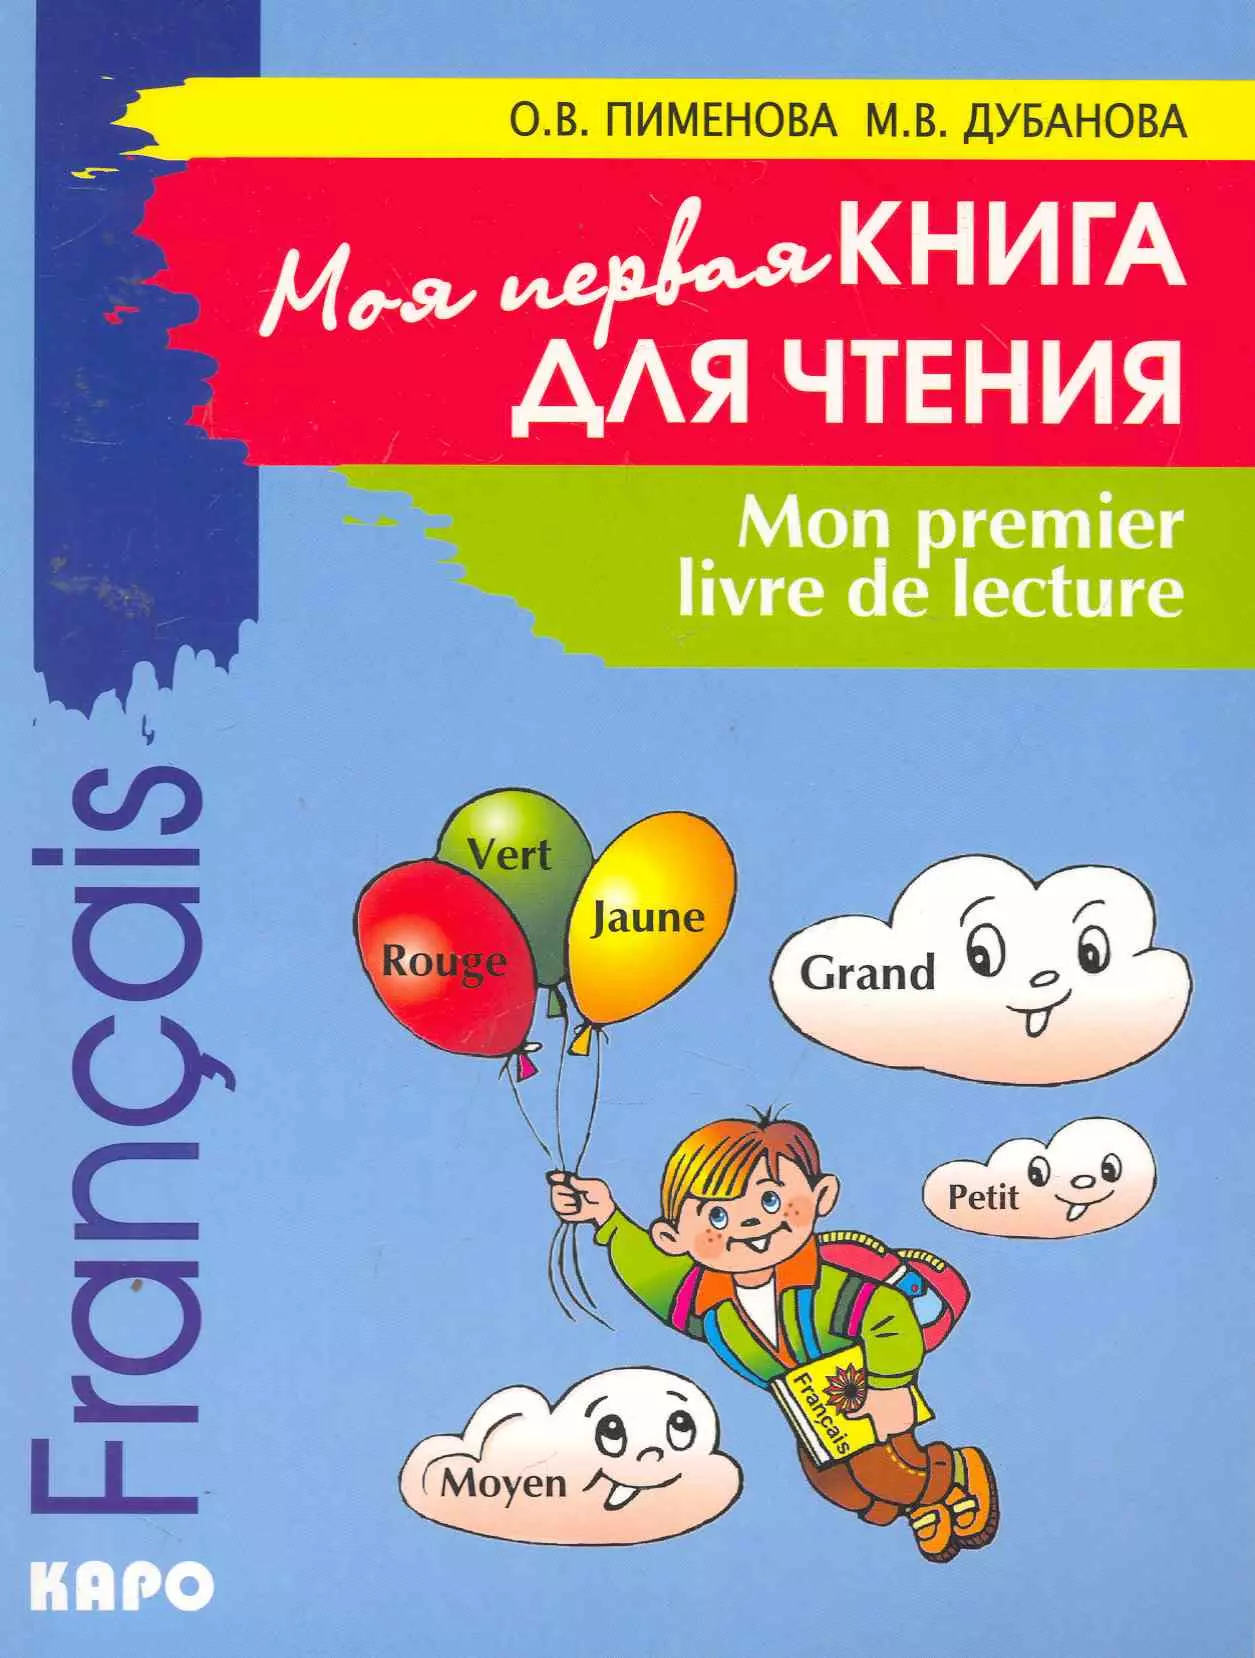 Пименова Ольга Вячеславовна - Моя первая книга для чтения. Французский язык для детей